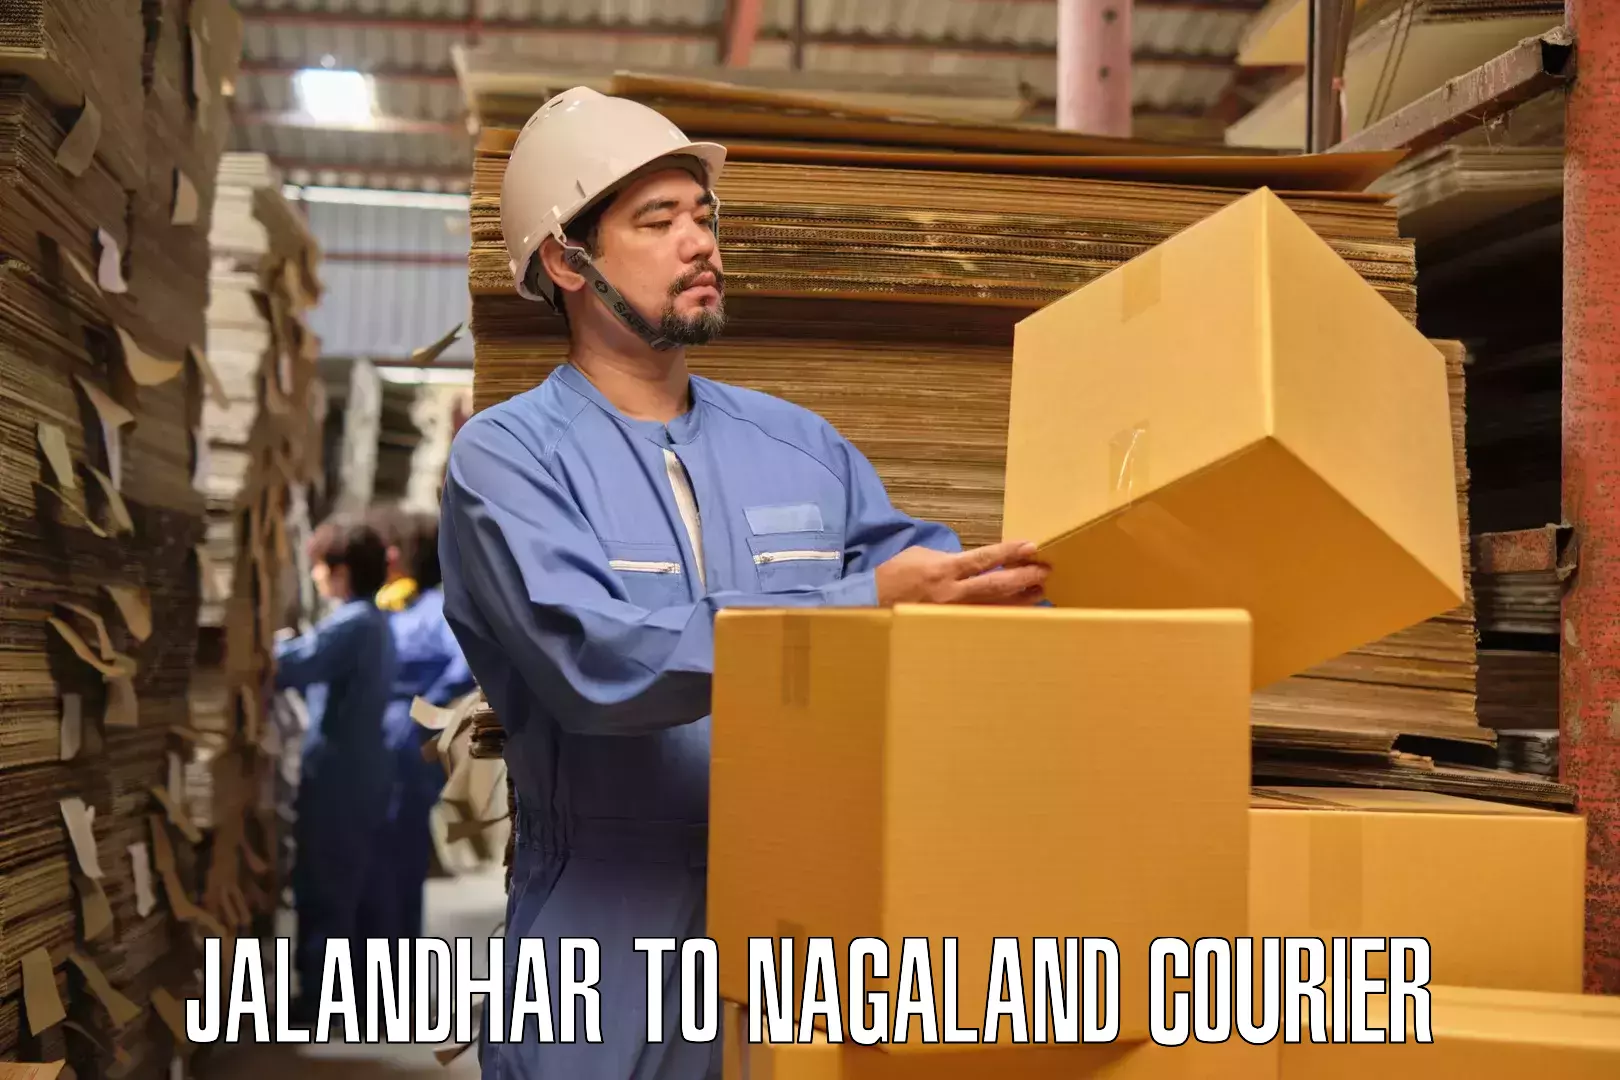 Furniture transport specialists Jalandhar to Longleng